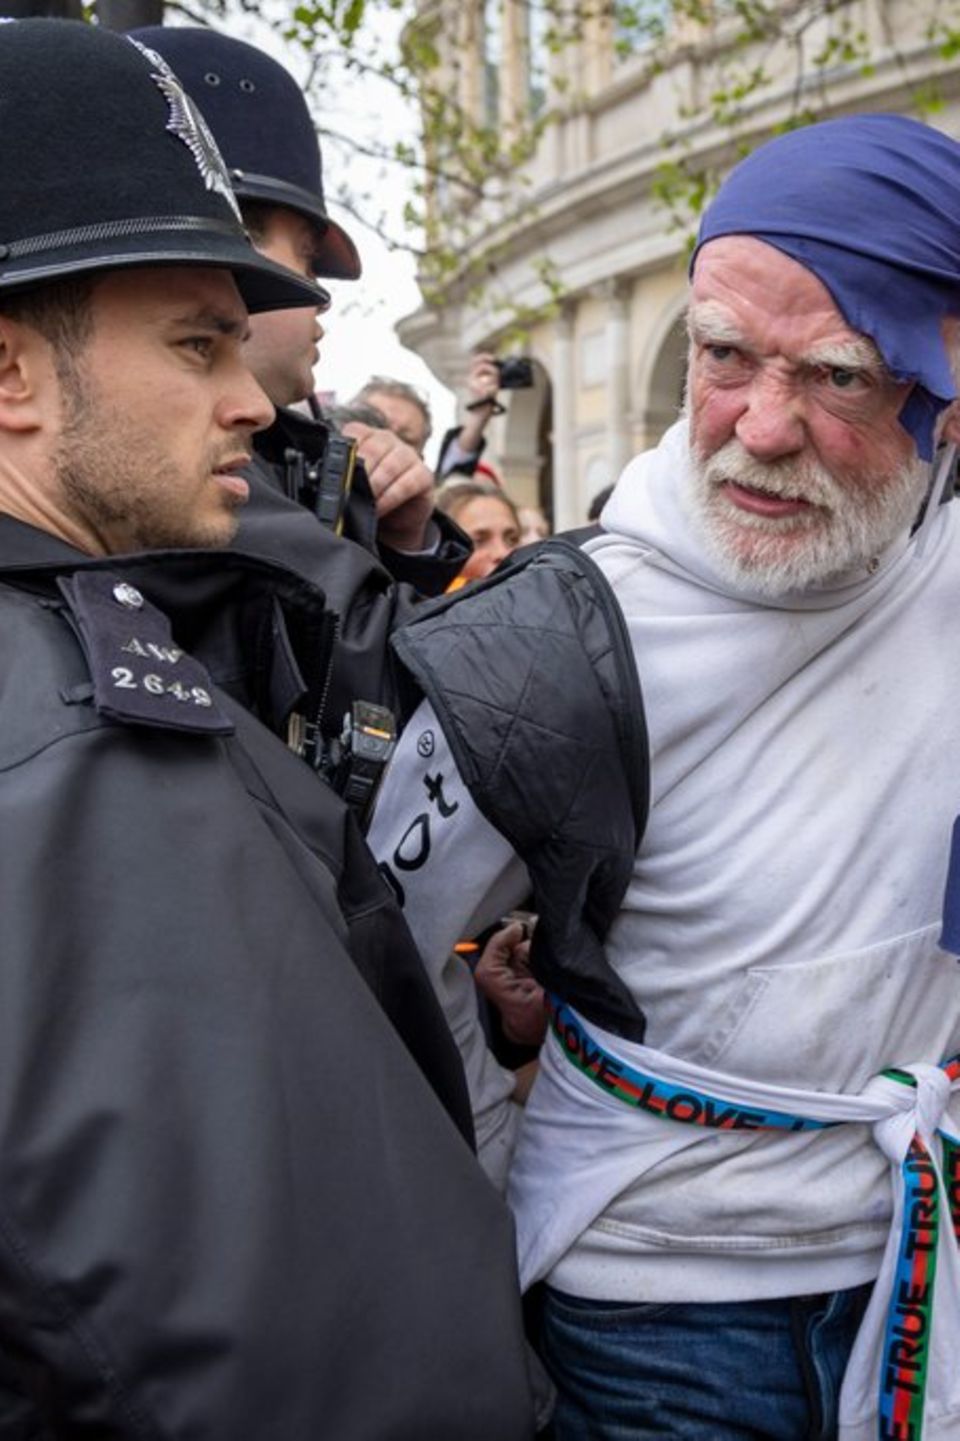 Am Krönungstag griff die Polizei in London hart durch. Unter anderem wurden Klimademonstranten abgeführt.